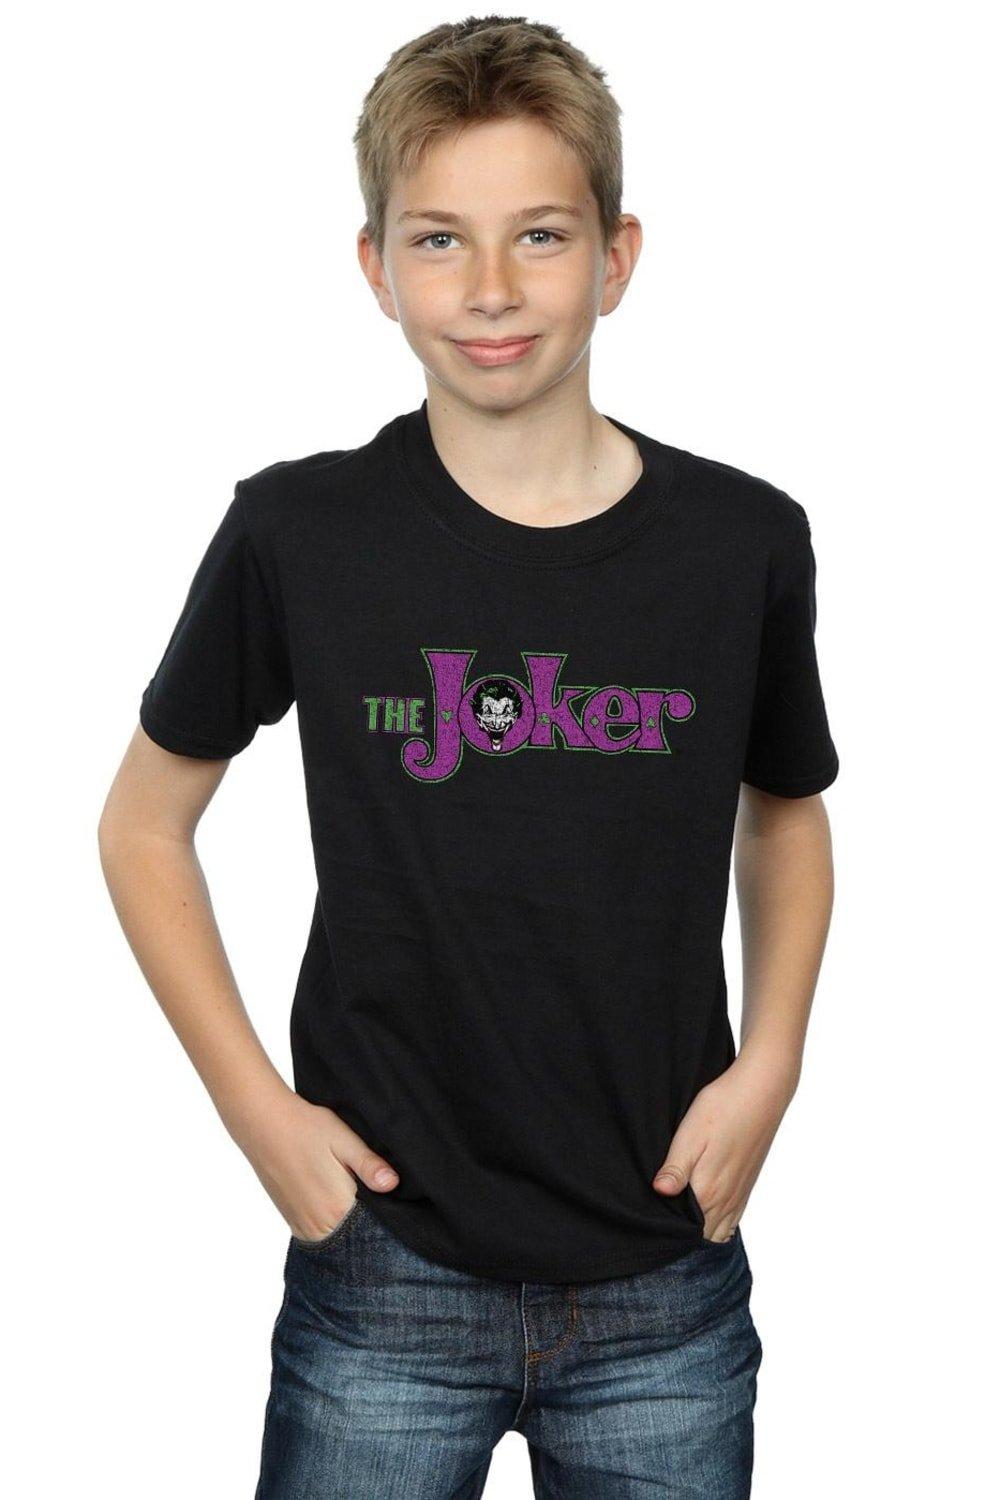 The Joker Crackle Logo T-Shirt